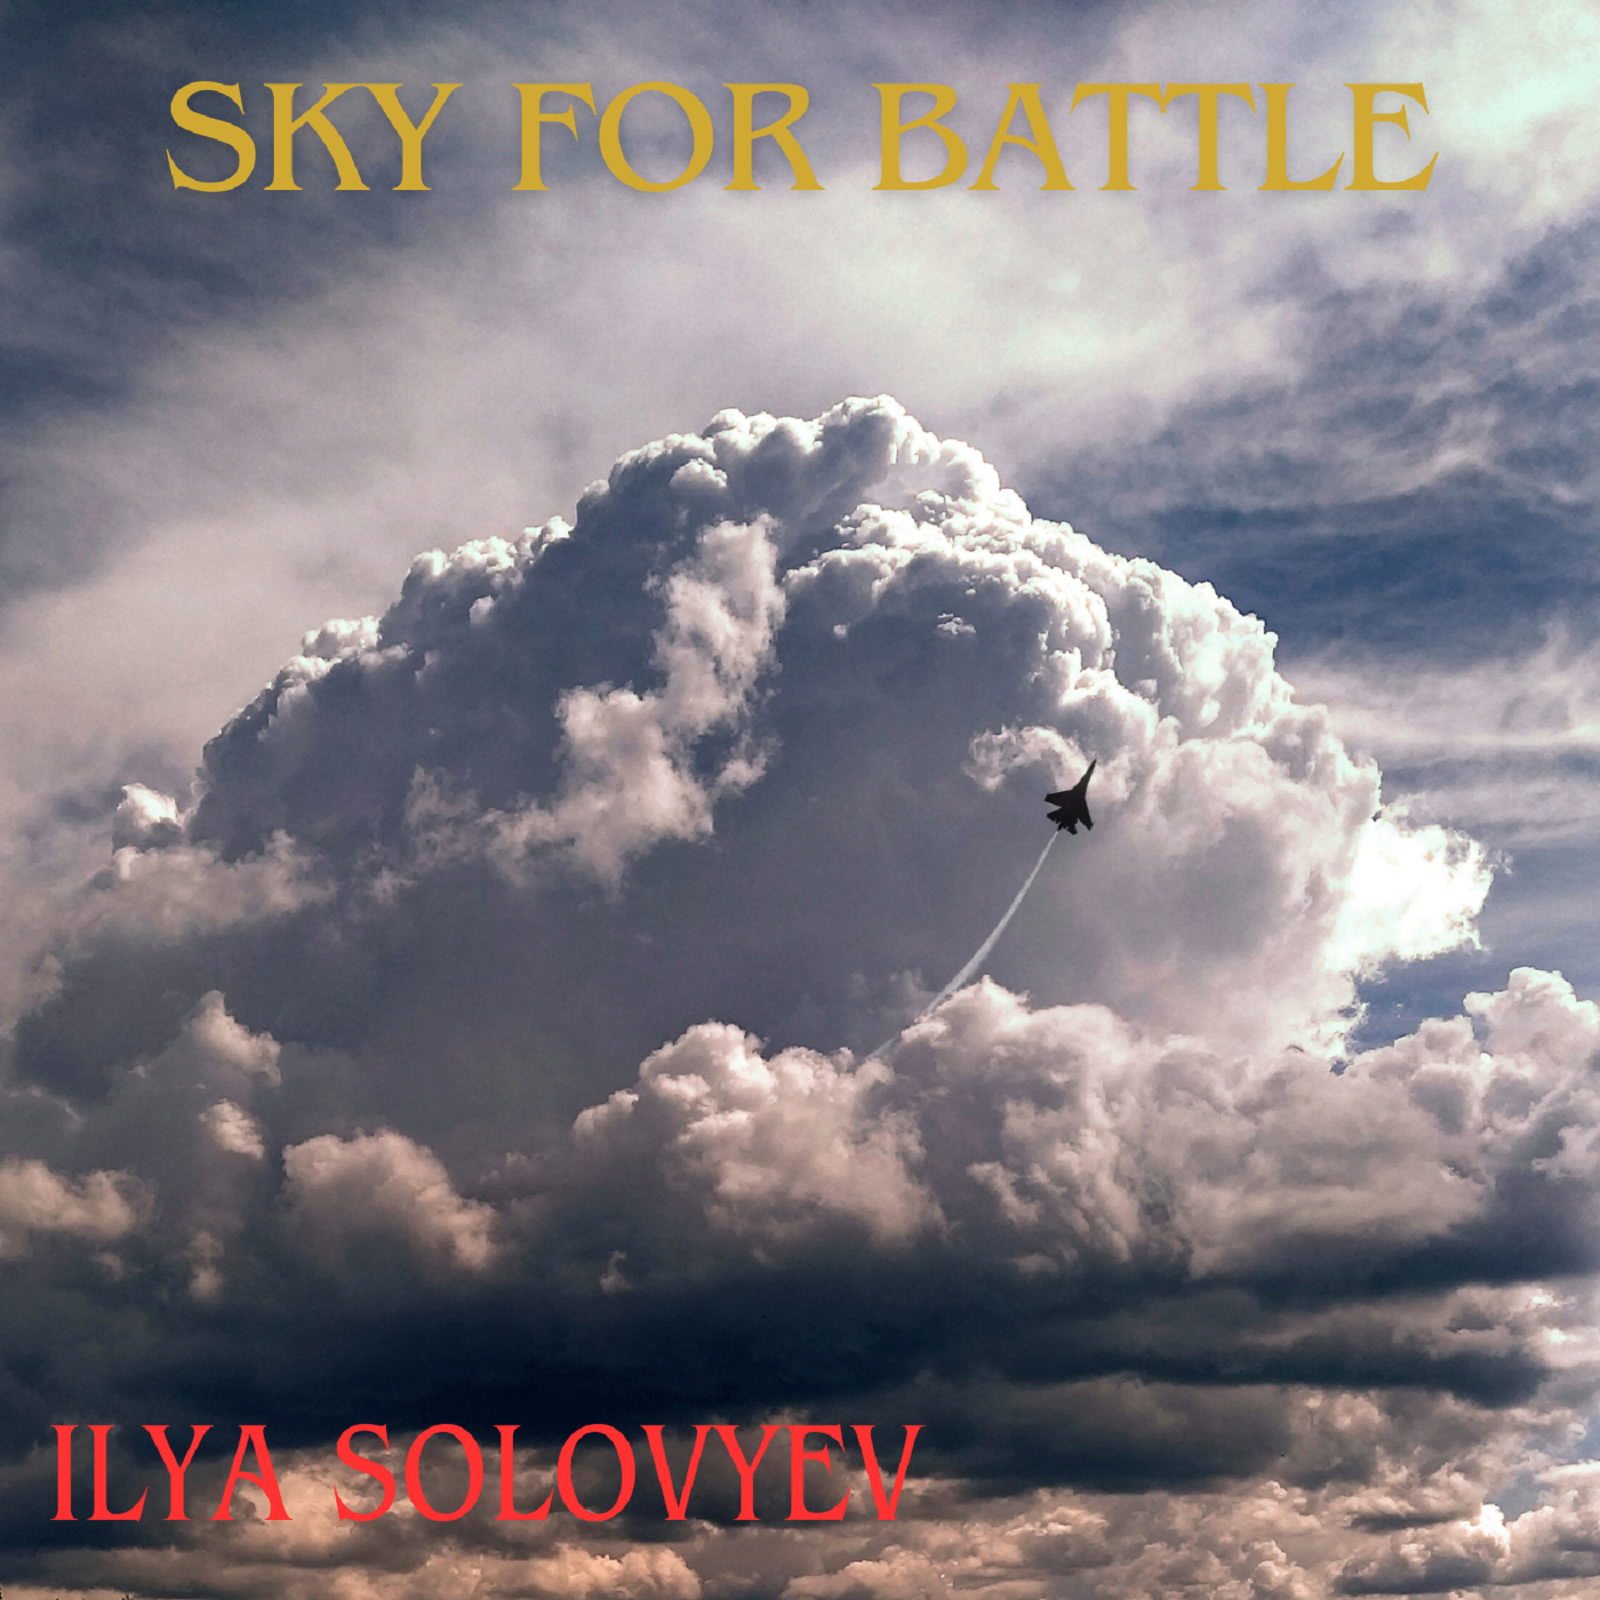 Sky for battle